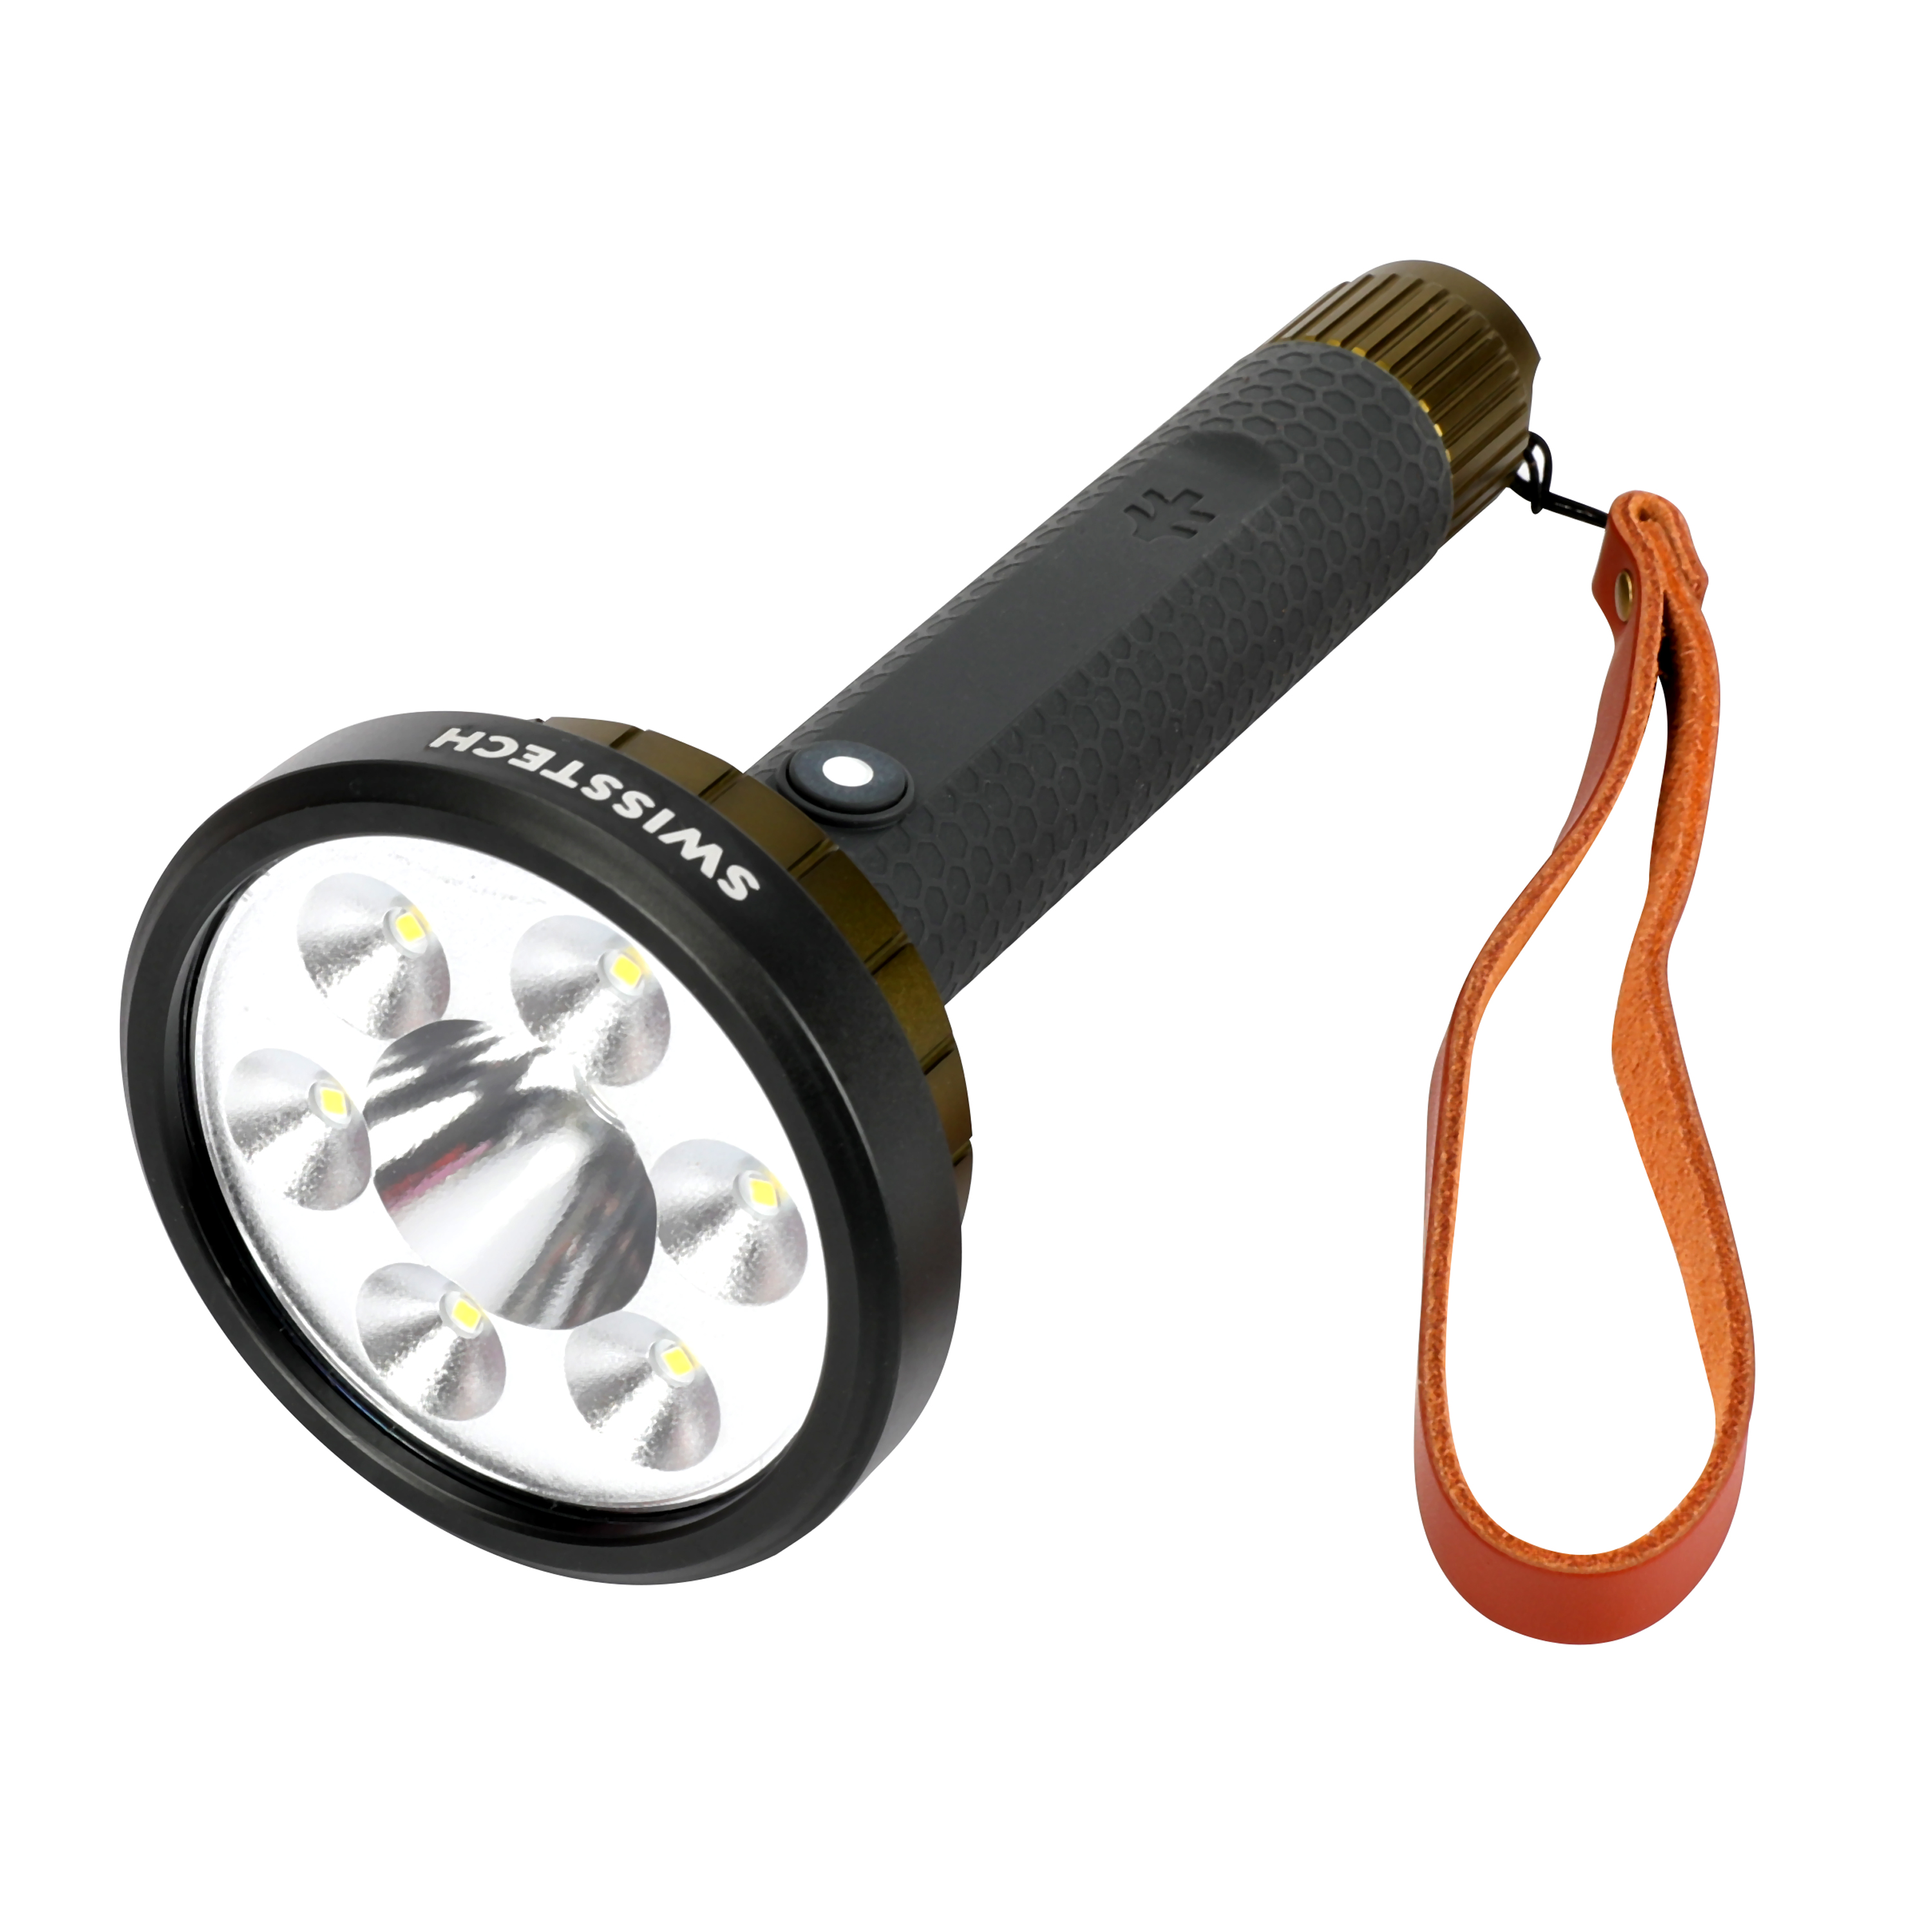 Swiss Tech Steigern 2000 Lumen LED Rechargeable Flashlight, IPX7 Waterproof, Digital Focusing - image 1 of 11